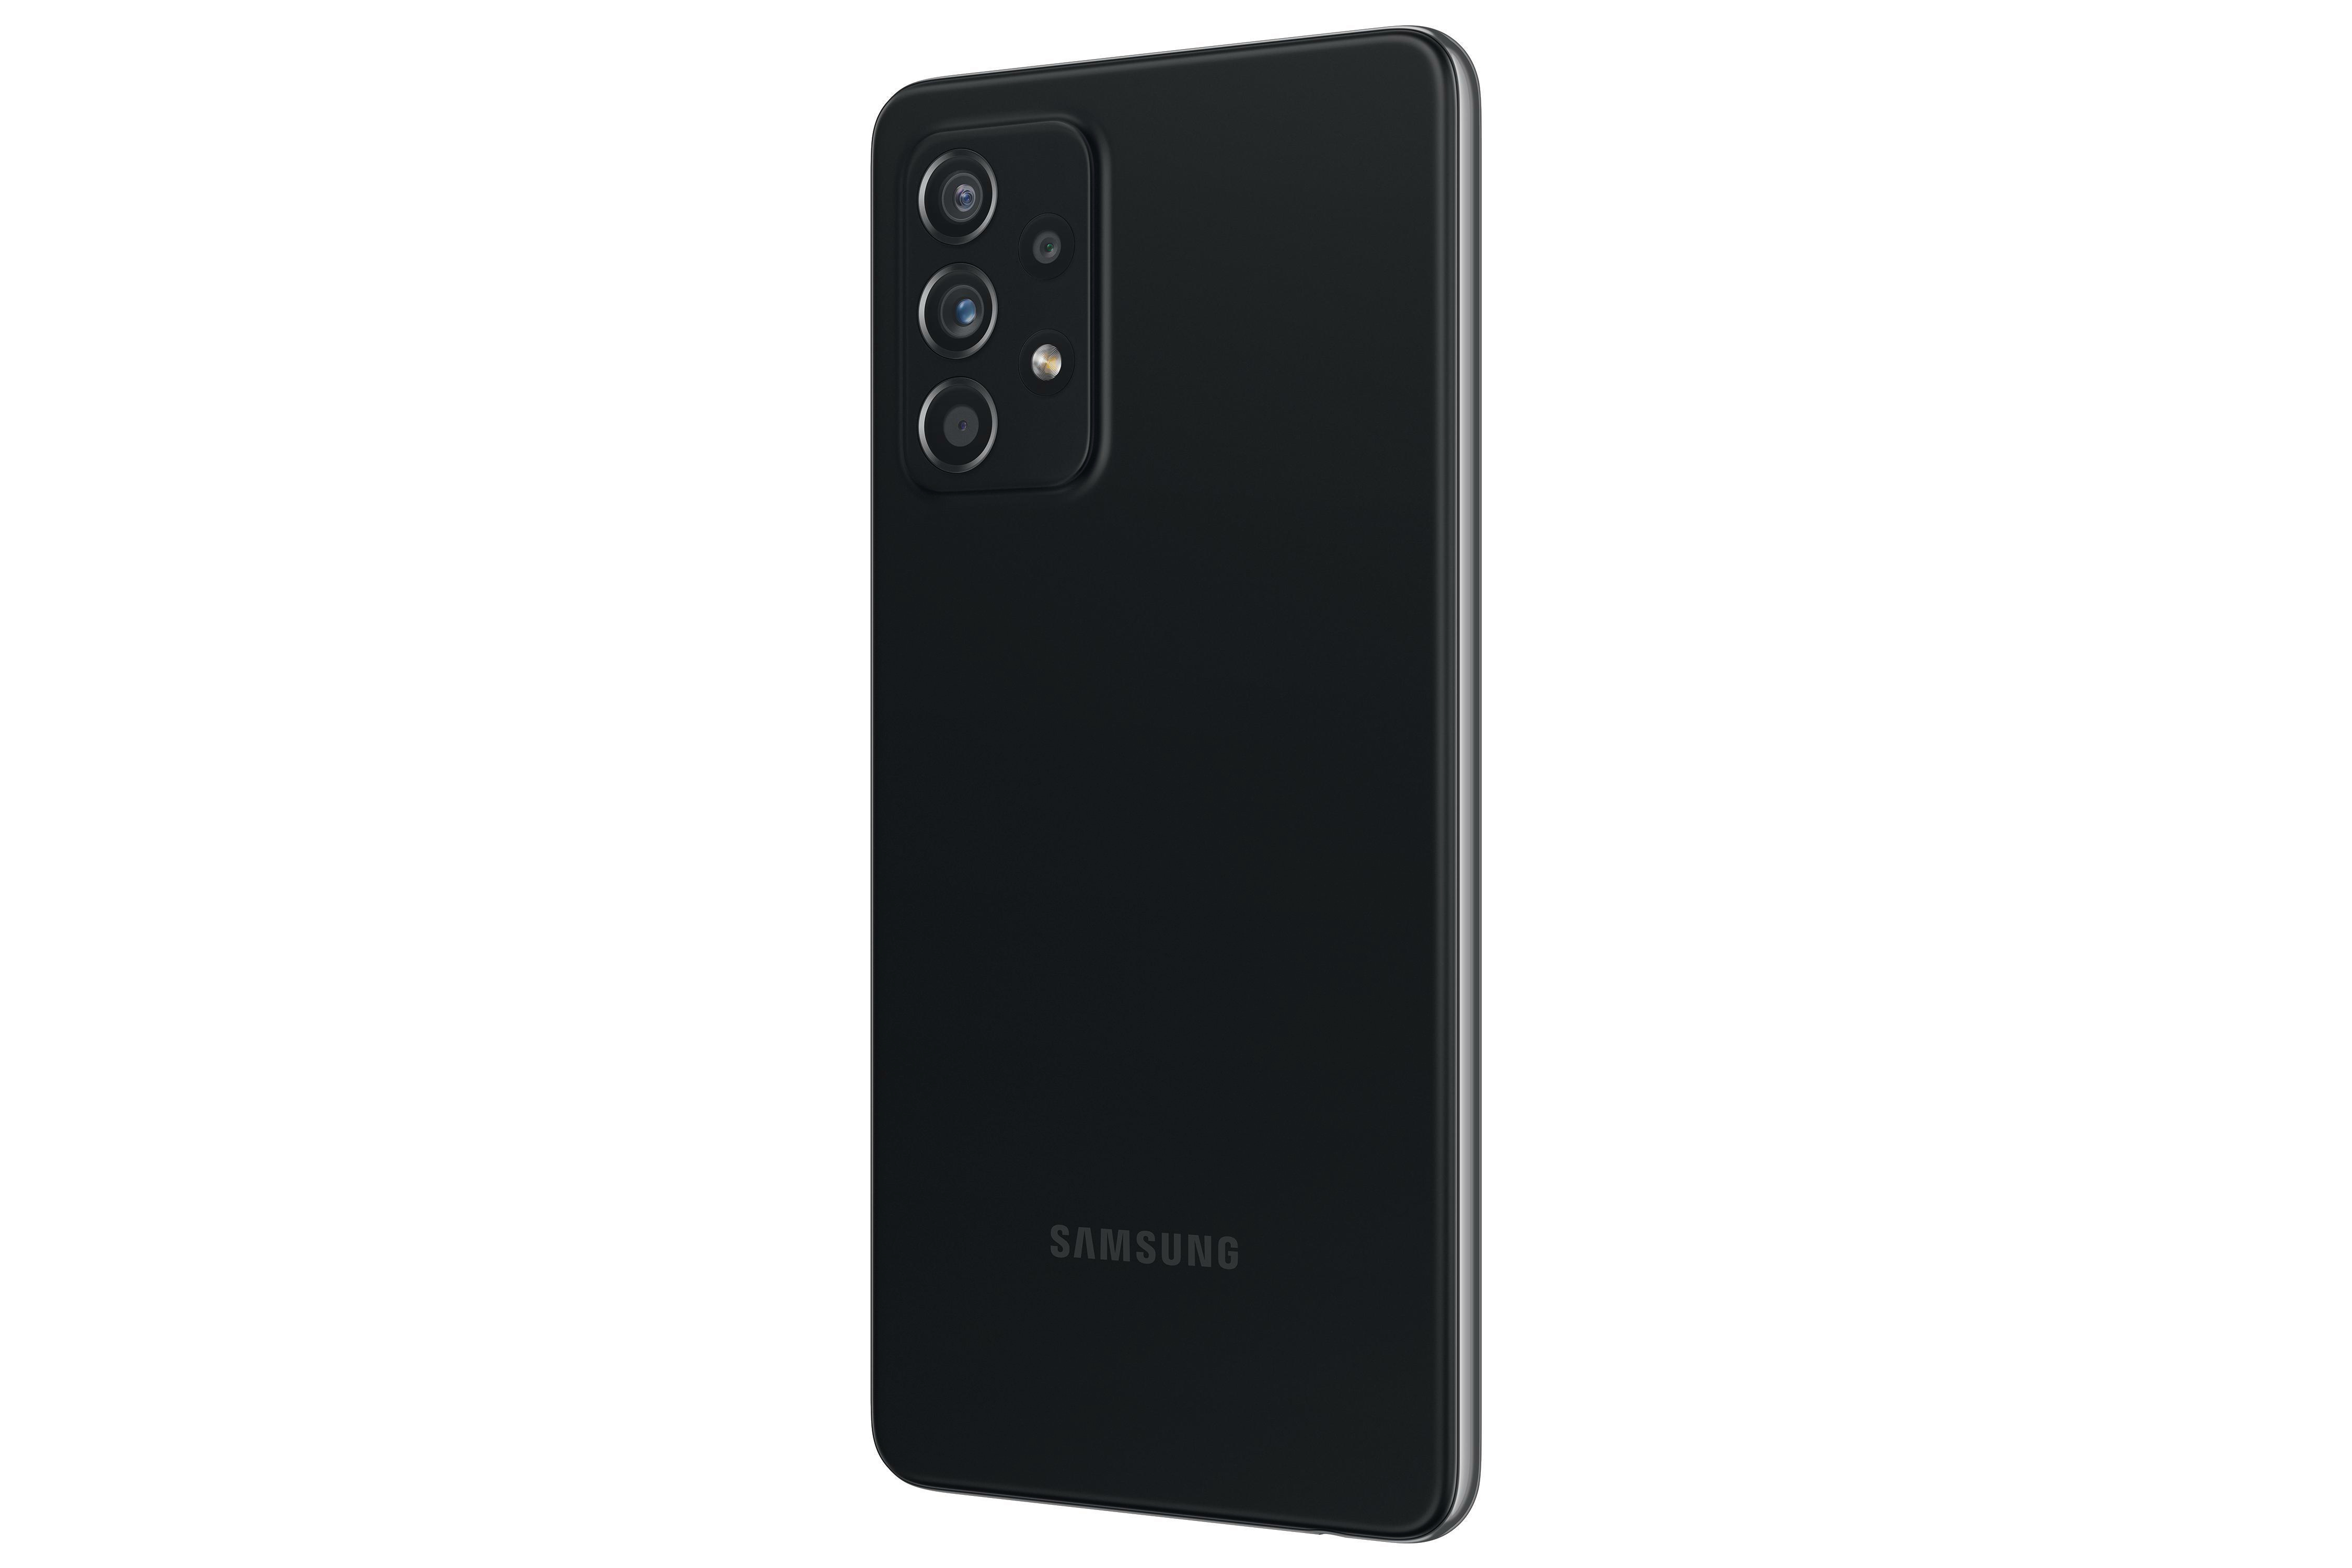 SAMSUNG Galaxy Dual 5G Awesome SIM Black GB 256 A52s